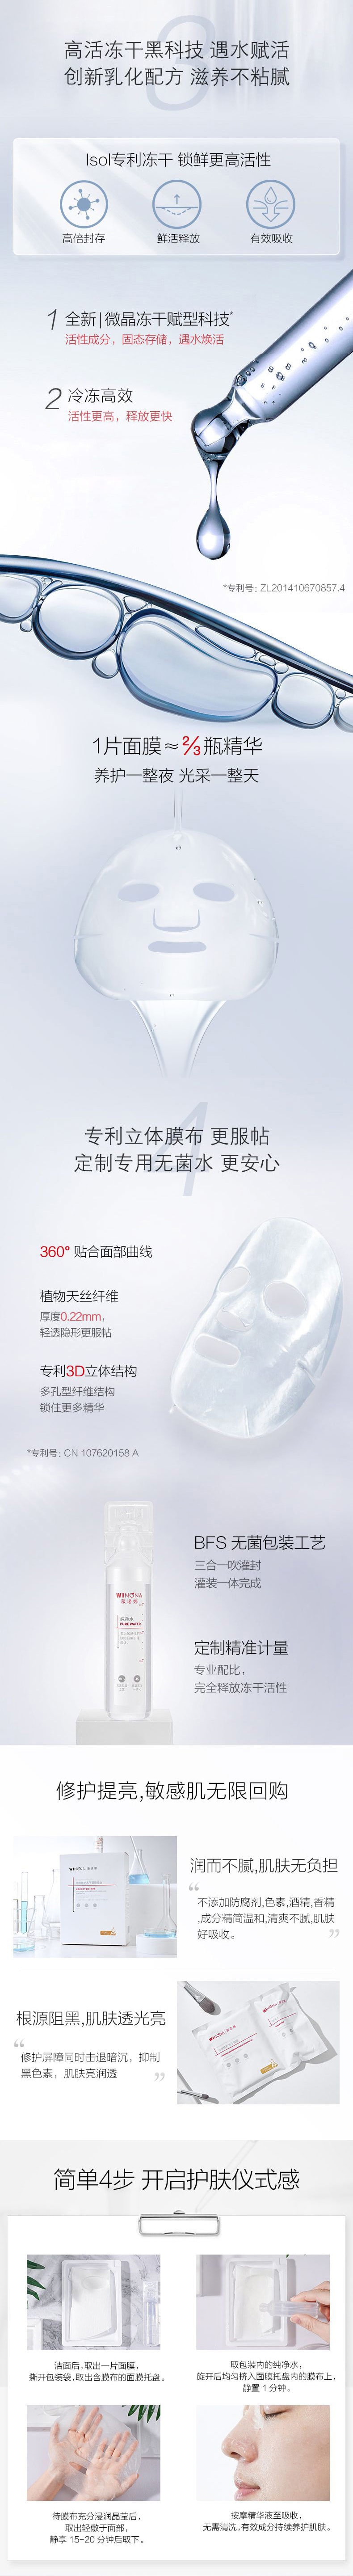 中國薇諾娜(WINONA)光感修護凍乾面膜6片/盒 保濕 面膜 亮白肌膚 提亮修護敏感肌【直降疊優惠券疊滿贈】拉新價